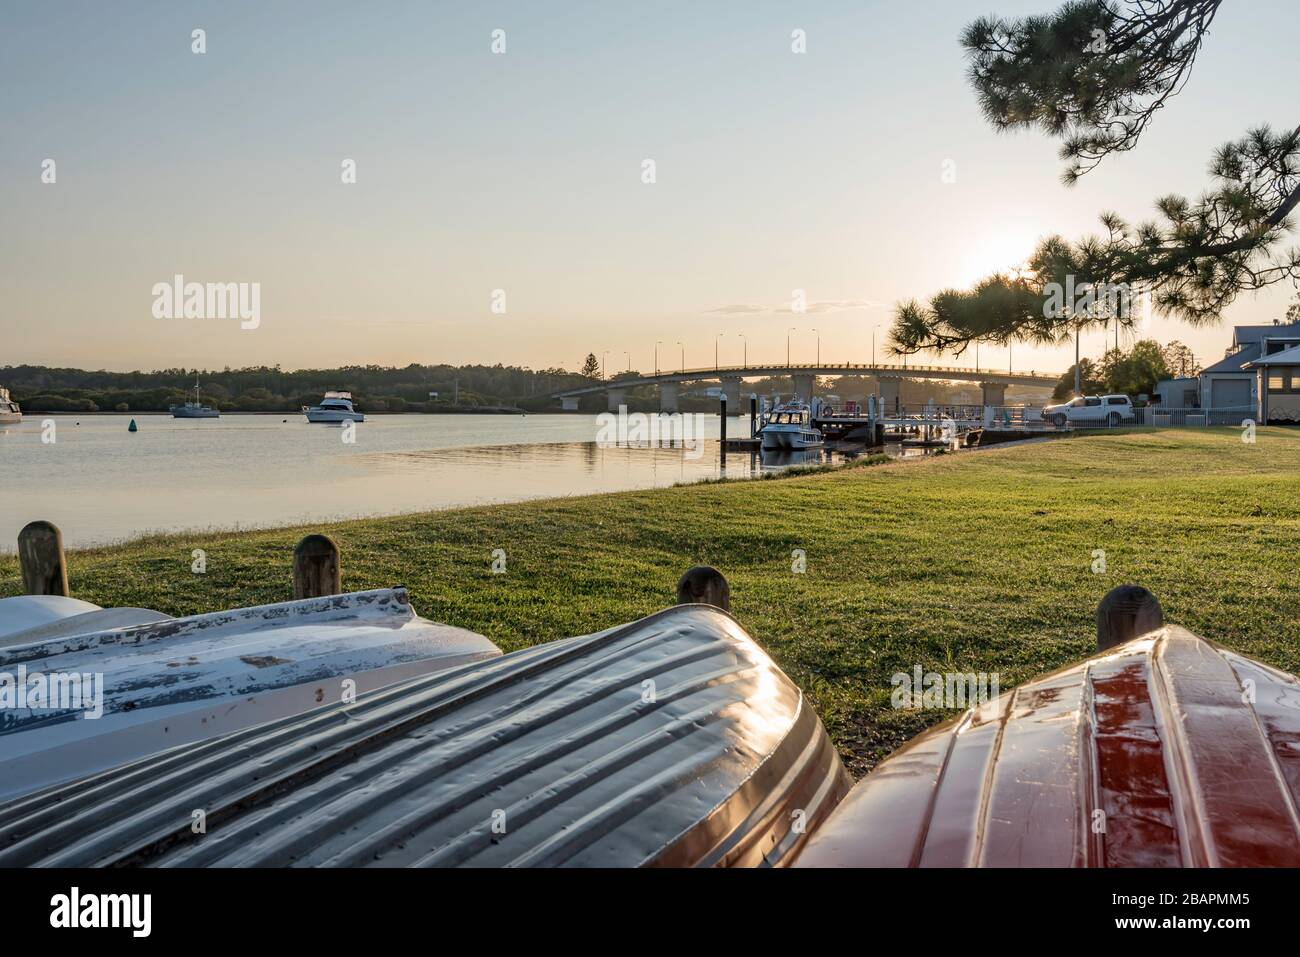 Le soleil du matin se reflète sur les bateaux à côté de la rivière Myall, près du pont chantant dans la ville de Tea Gardens, Nouvelle-Galles du Sud, Australie Banque D'Images